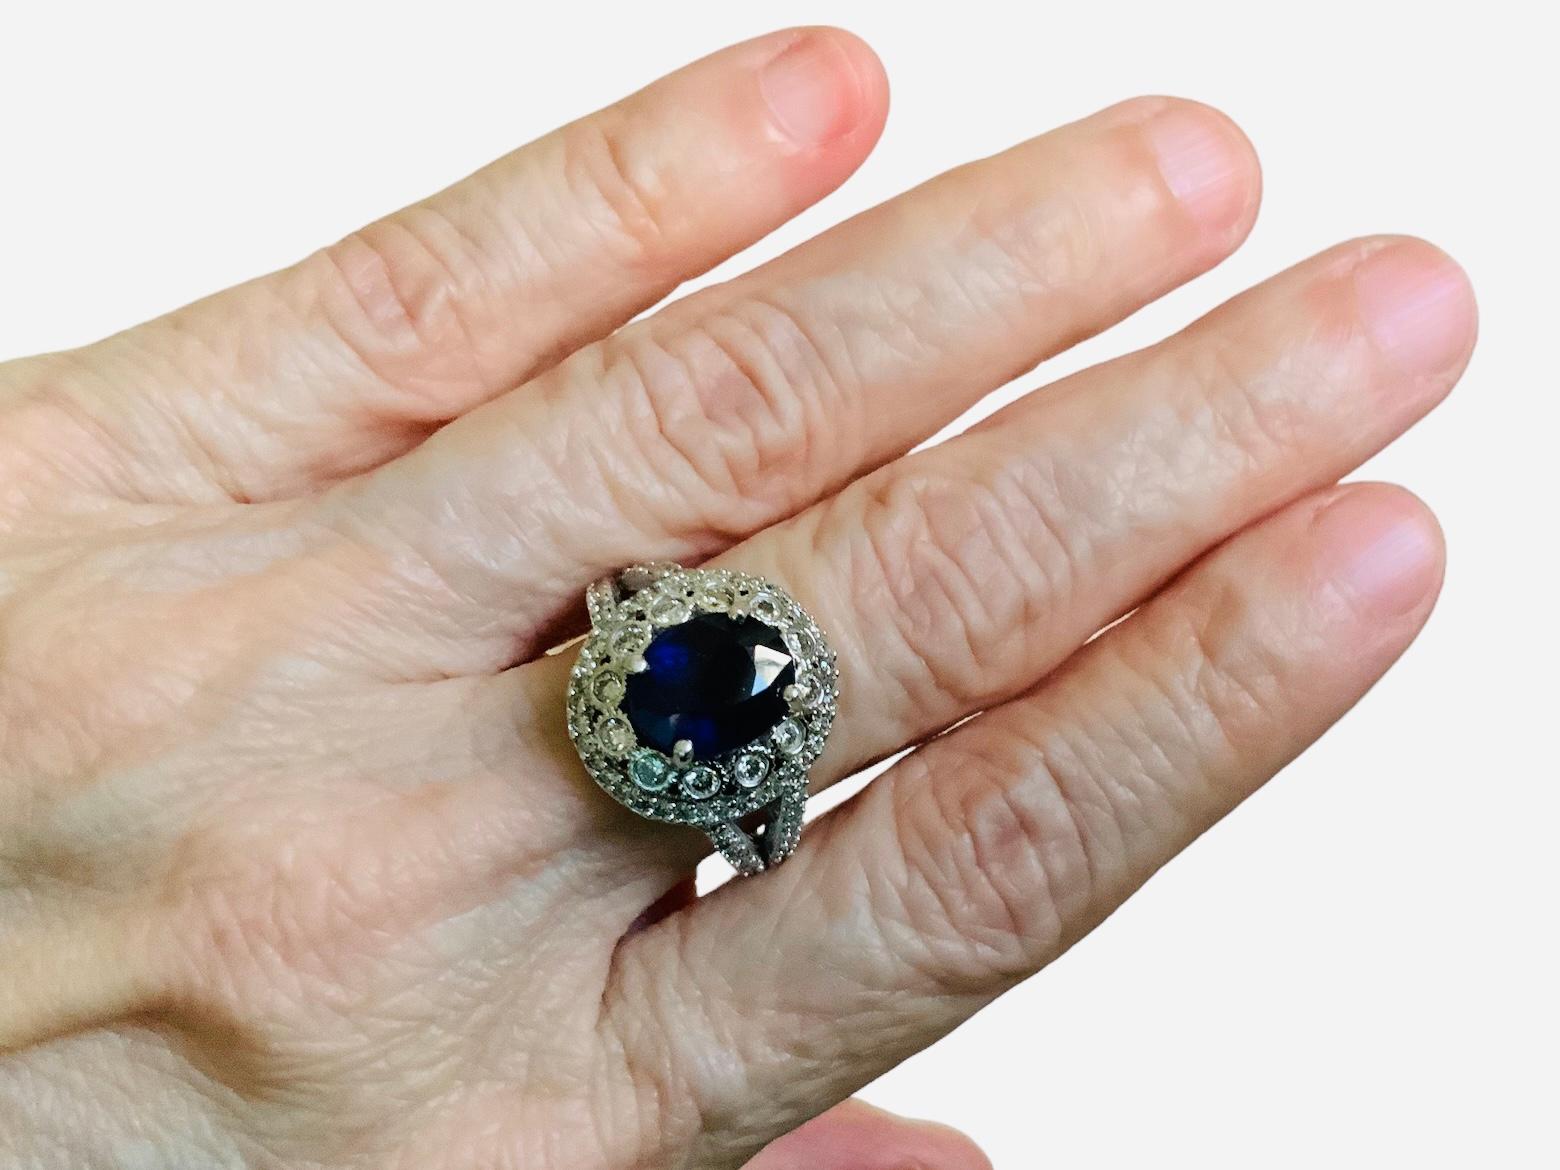 Dies ist ein 14K Weißgold, Diamanten und Saphir Ring. Er zeigt einen königlichen Ring, bestehend aus einem intensiv königsblauen, oval geschliffenen natürlichen Saphir (Qualität AA, Gewicht 3,35 Karat) und 82 natürlichen runden Diamanten (Farbe I-J,